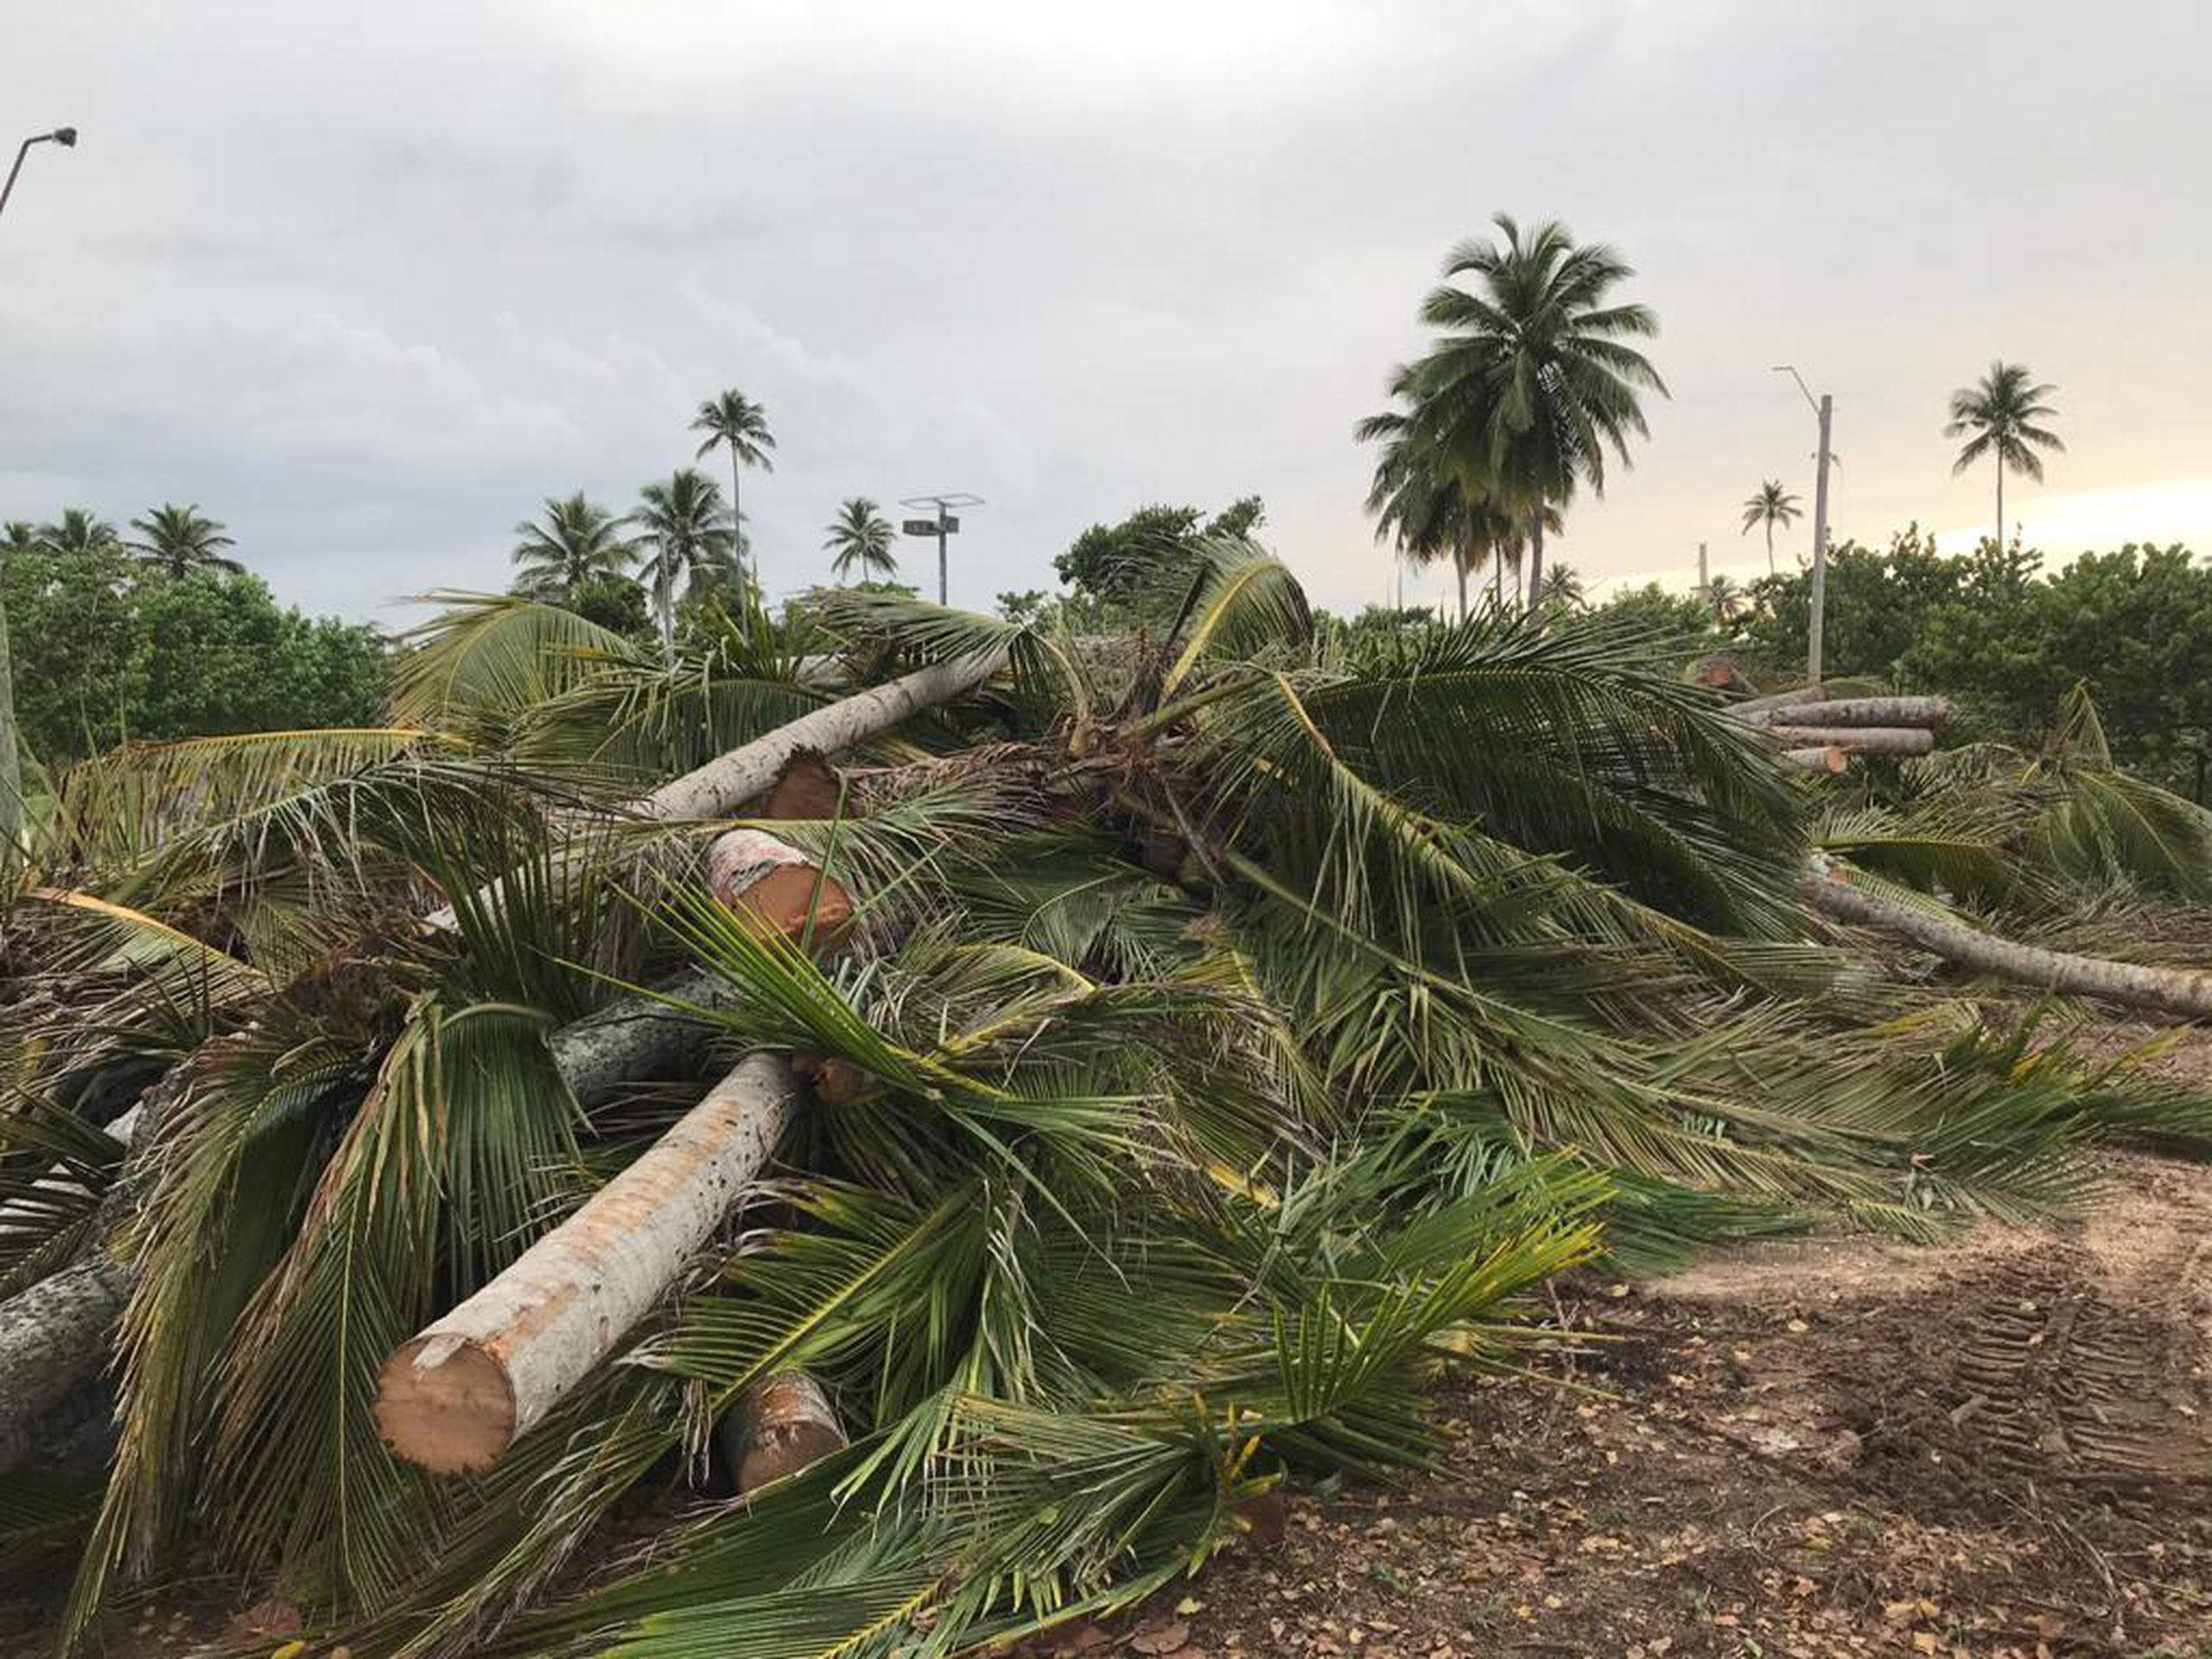 Vecinos del área de Cerro Gordo, usuarios del balneario y las instalaciones deportivas, así como el municipio de Vega Alta, demandaron por la tala indiscriminada de árboles y palmas.